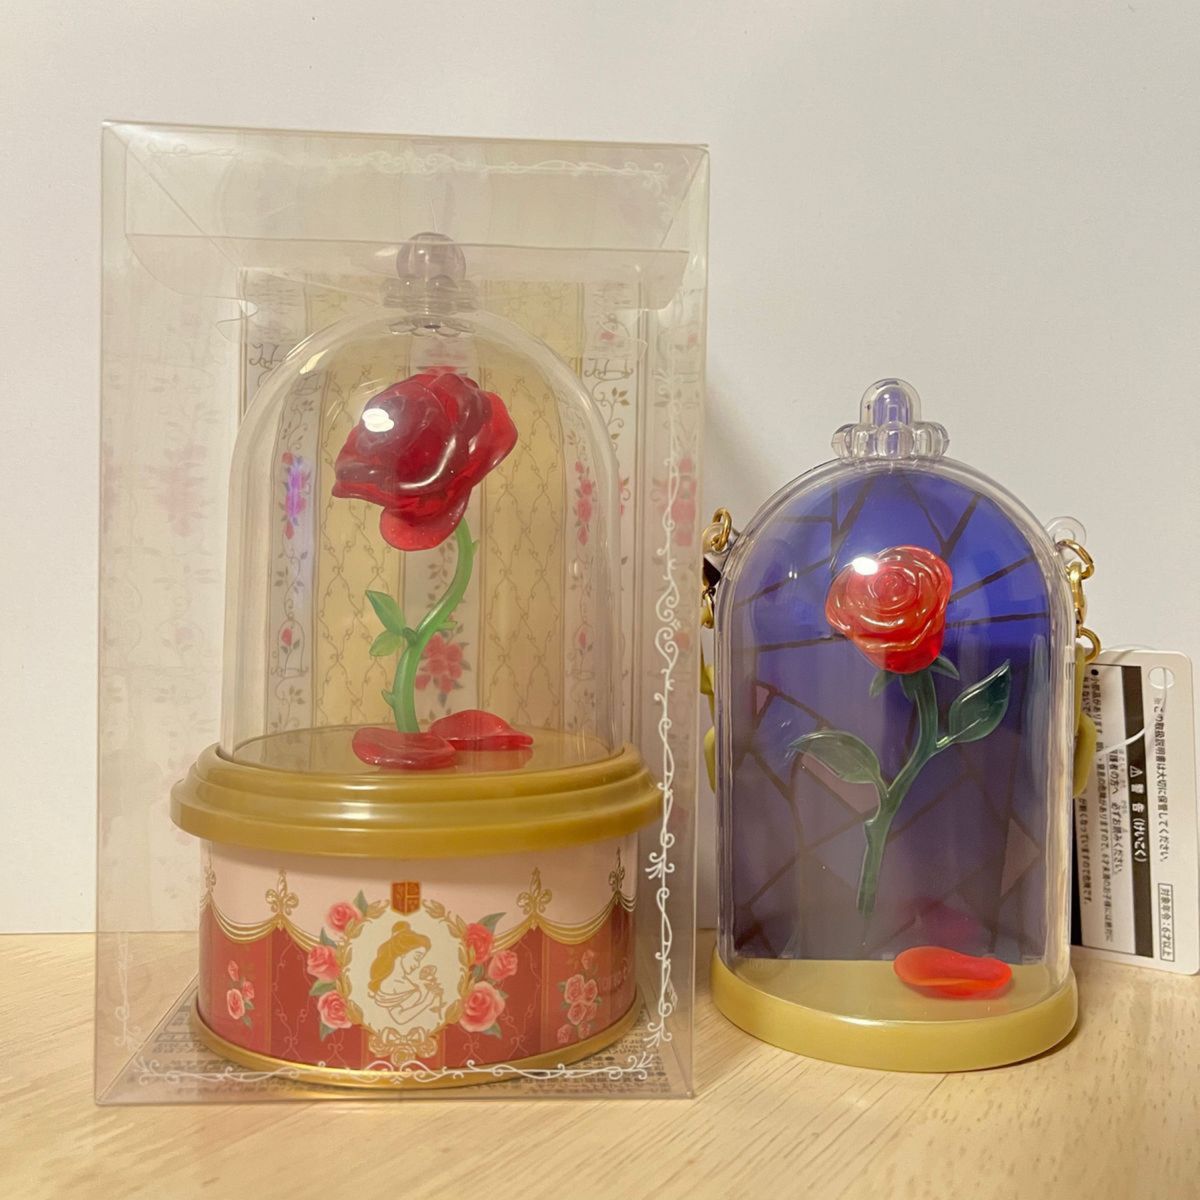 美女と野獣  薔薇  スナックケース  紅茶缶  2個セット　東京ディズニーリゾート  ディズニーランド  TDL   インテリア